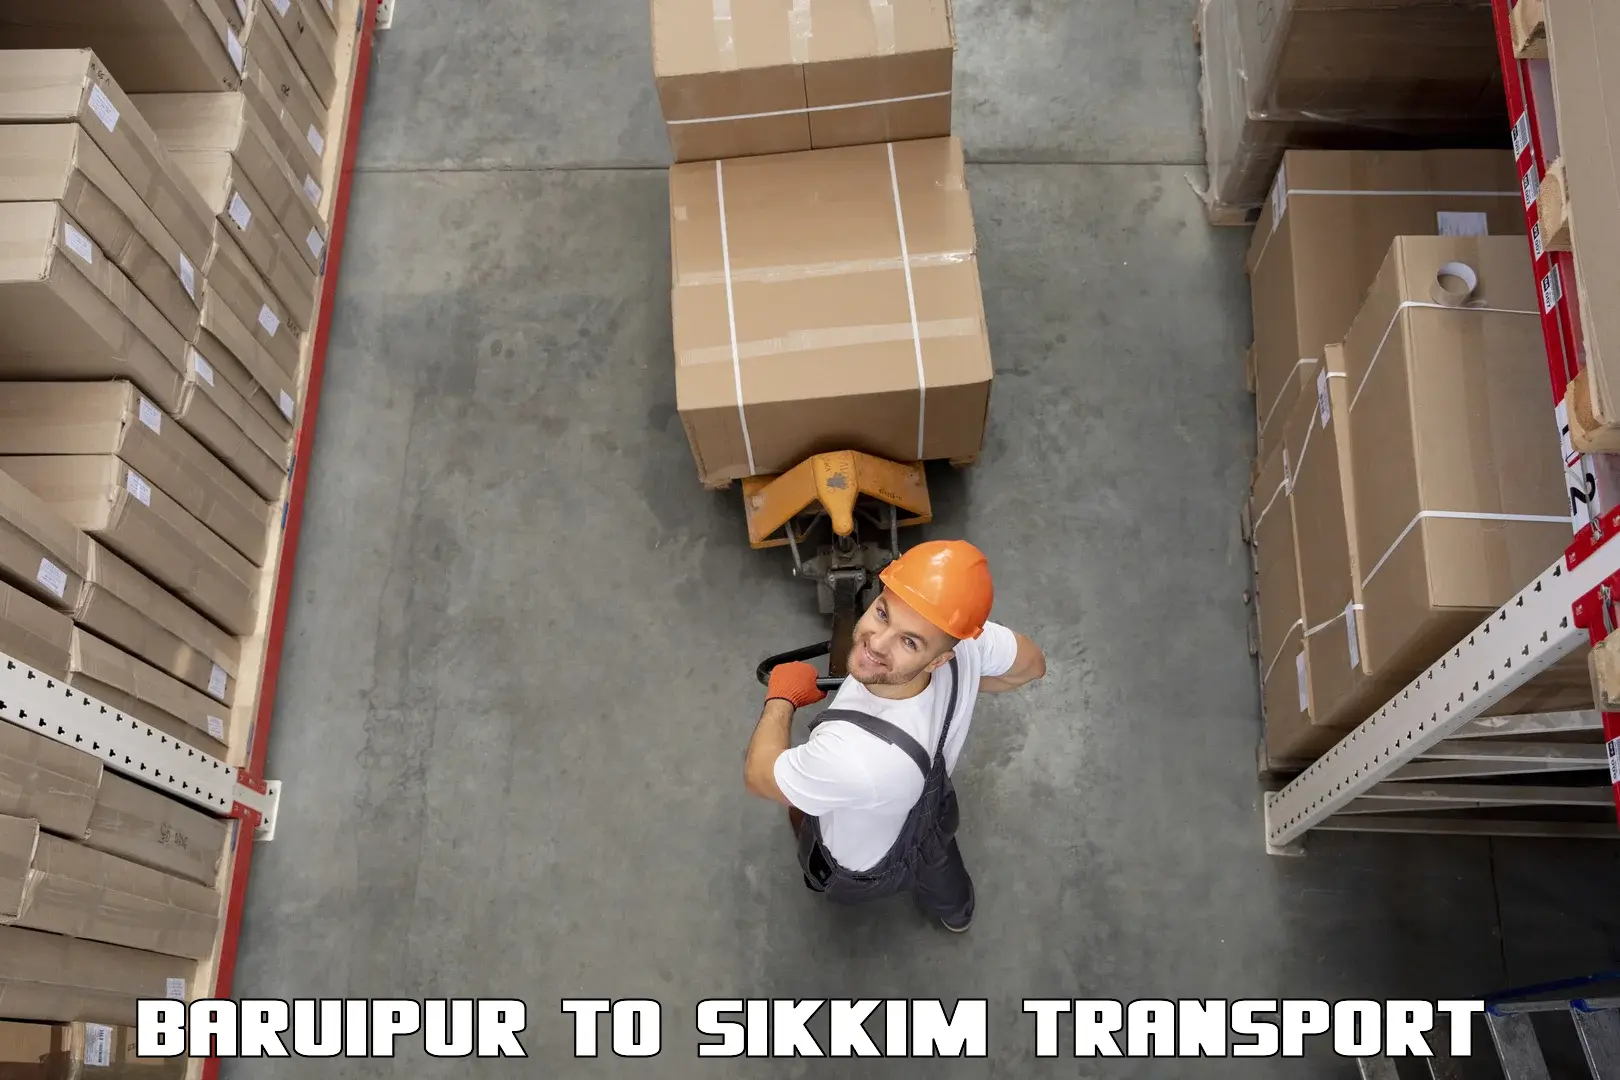 Air cargo transport services Baruipur to Singtam